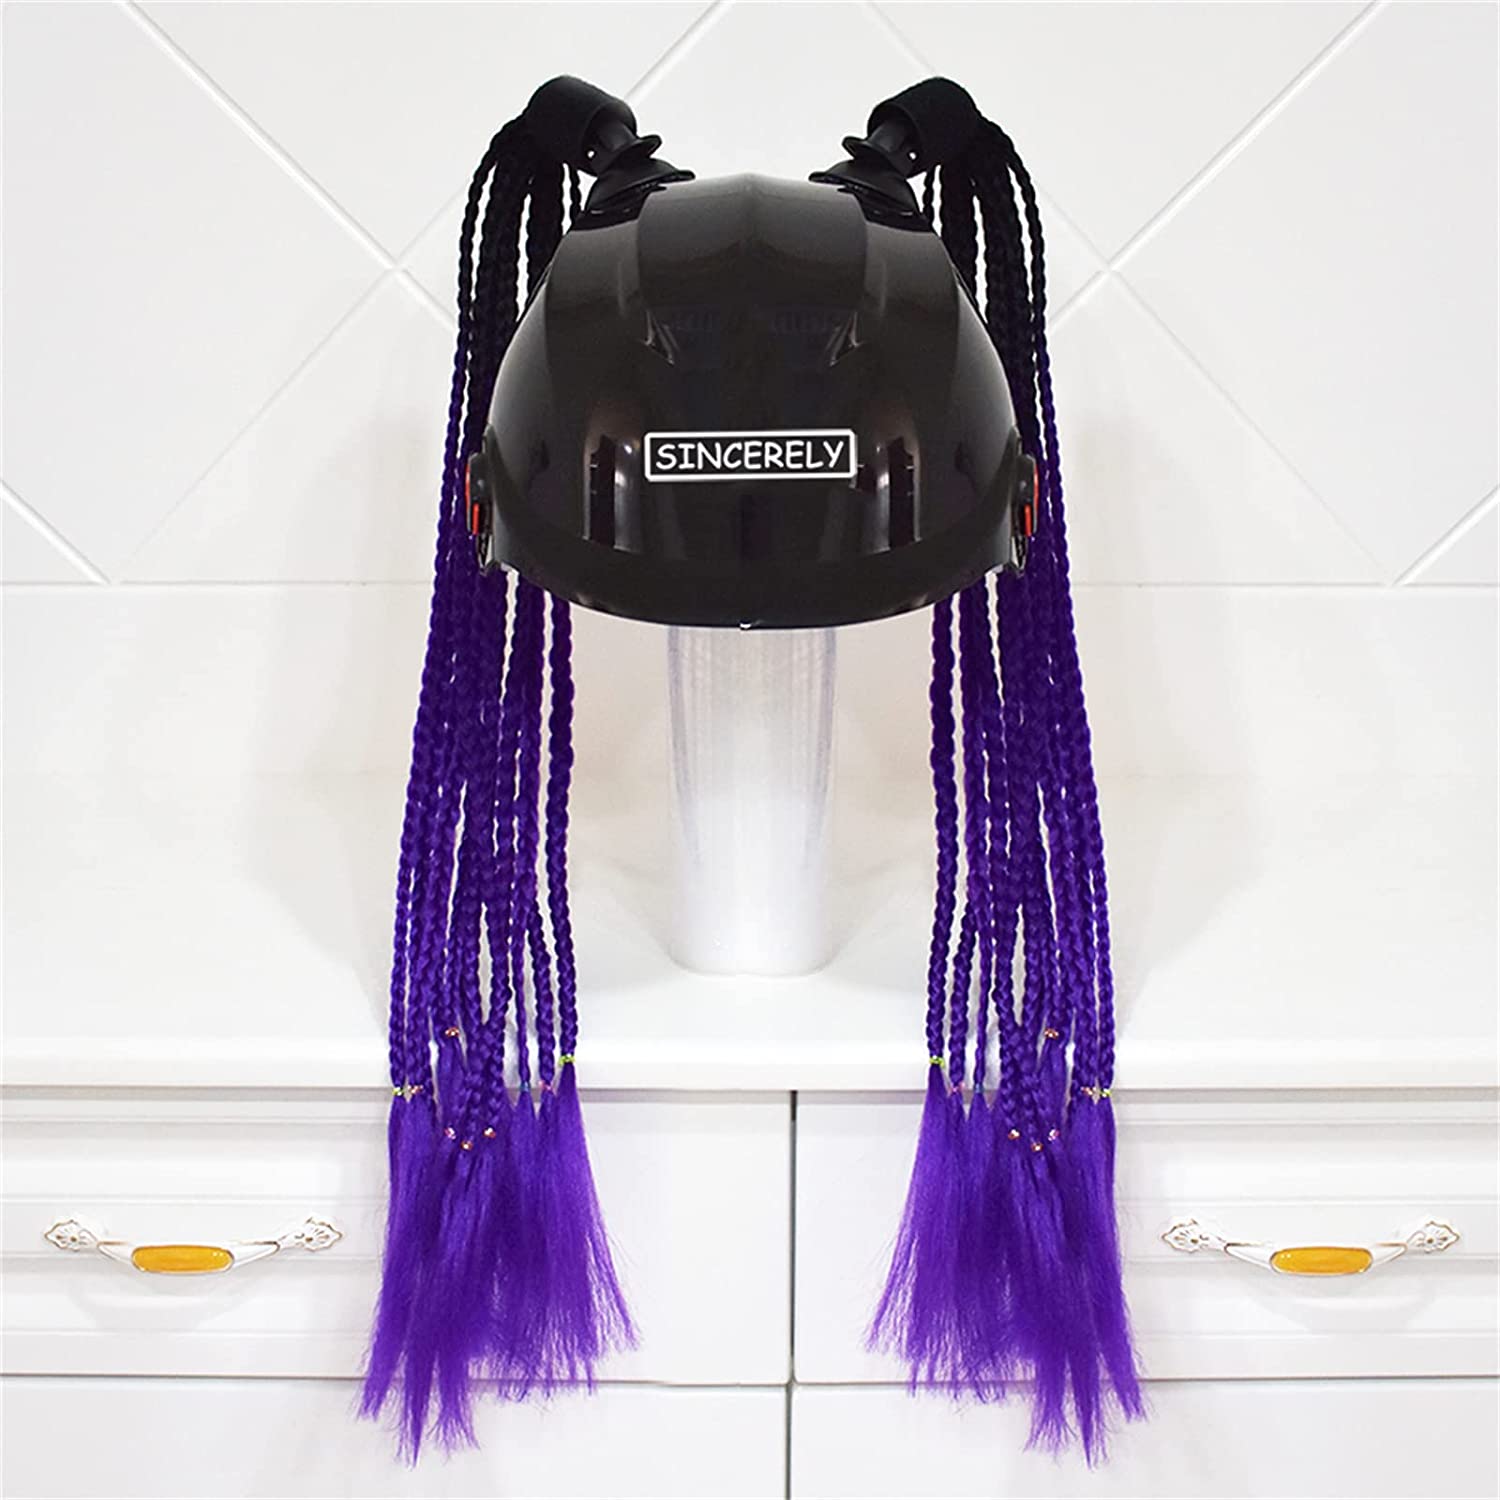 Tresse pour casque moto - Violet/Noir